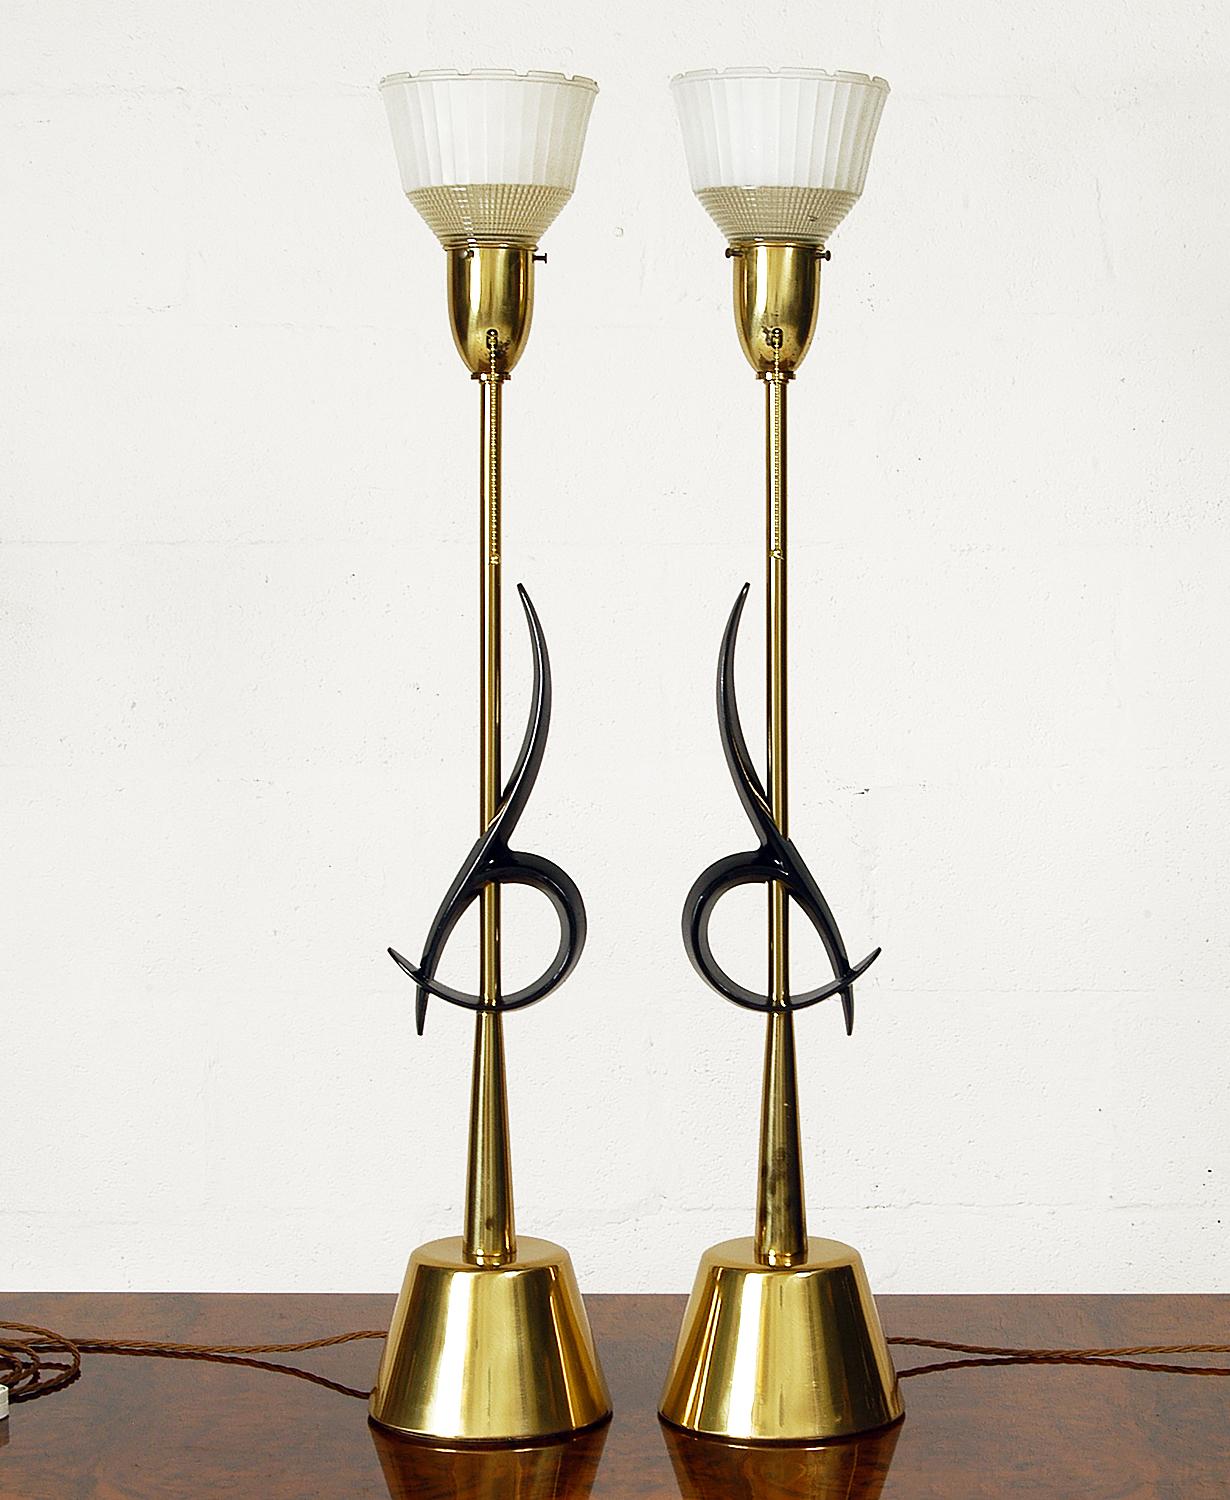 Une paire spectaculaire de grandes lampes de table conçues et fabriquées par la Rembrandt Lamp Company de Chicago. D'une hauteur énorme de 95 cm, ces lampes impressionnantes sont des classiques de l'American Mid-Century Modern.
La base et la tige